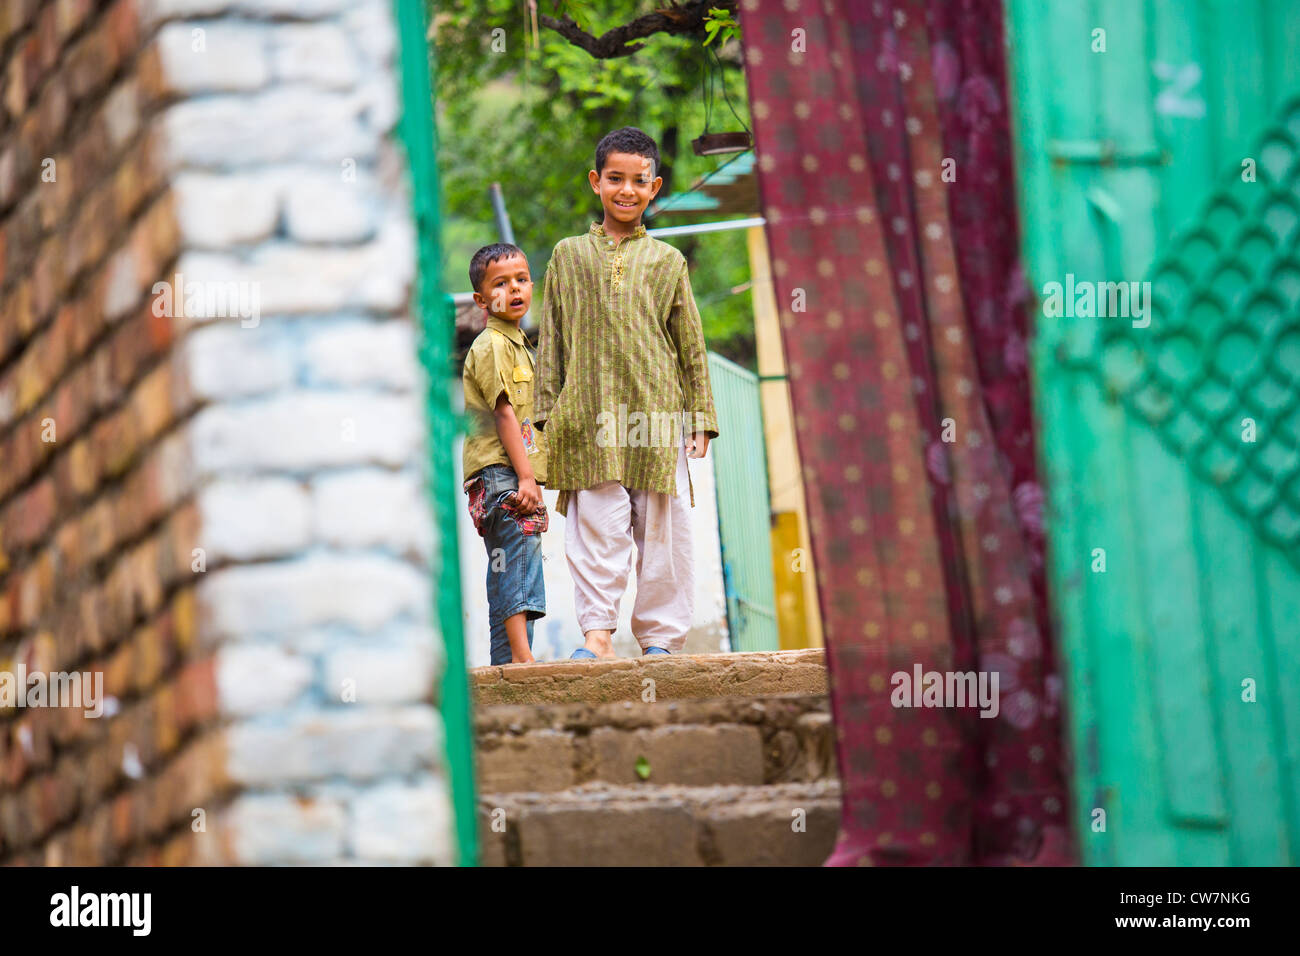 Les garçons du dit Village Pur, Islamabad, Pakistan Banque D'Images